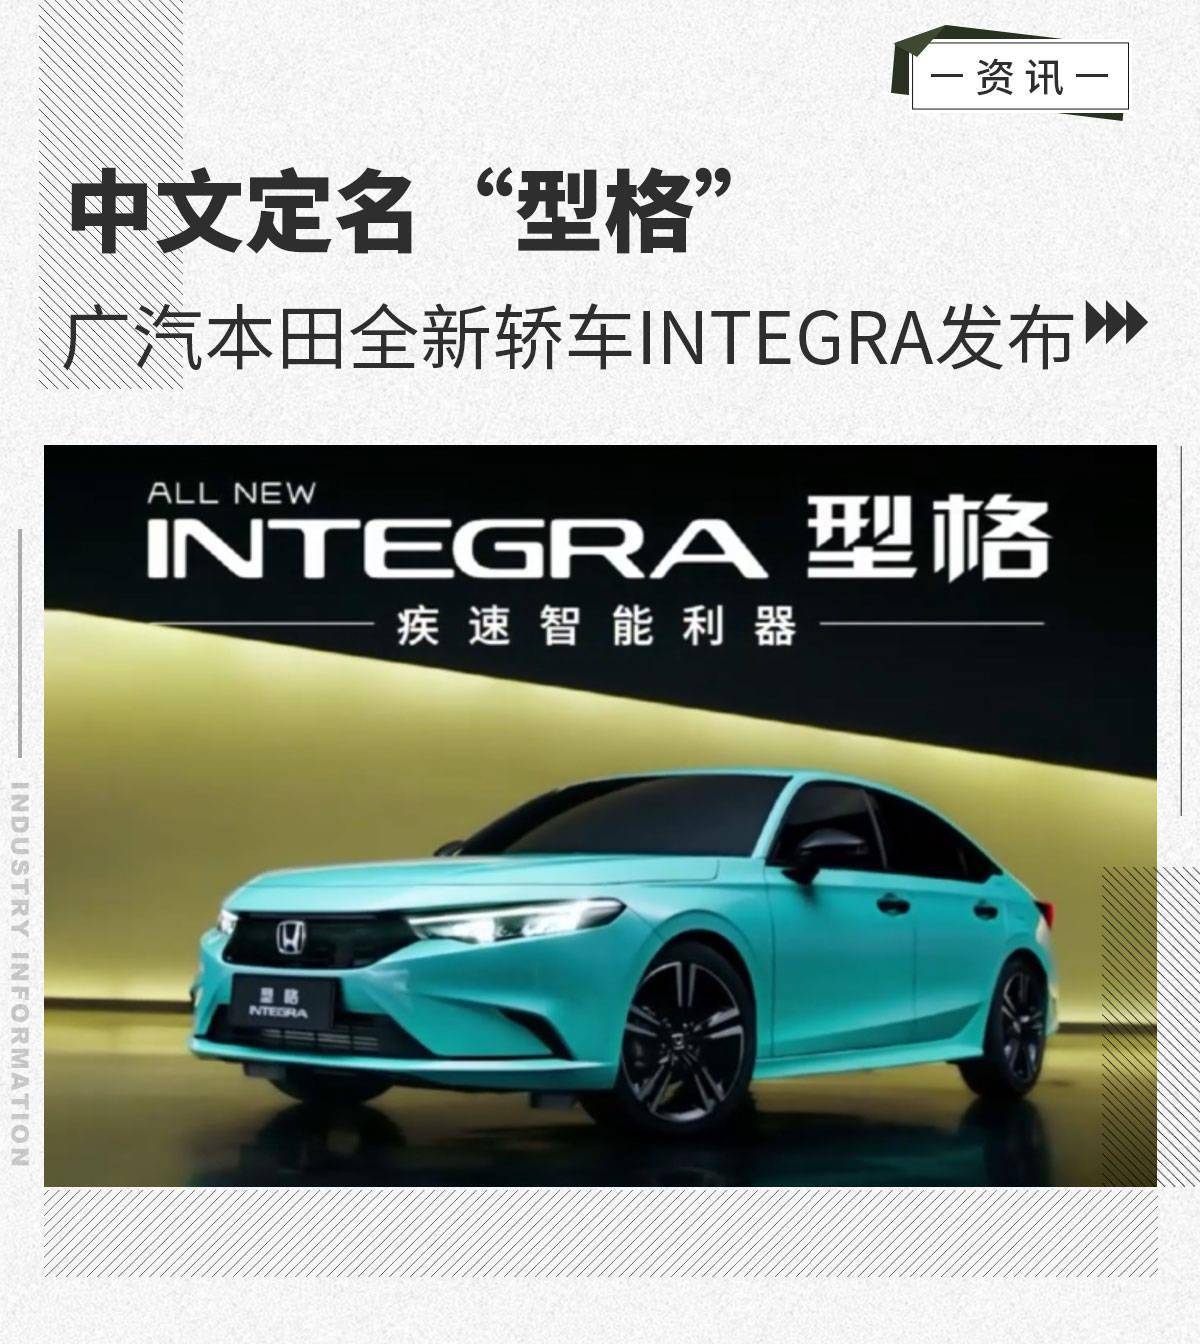 中文定名"型格" 广汽本田全新轿车integra发布